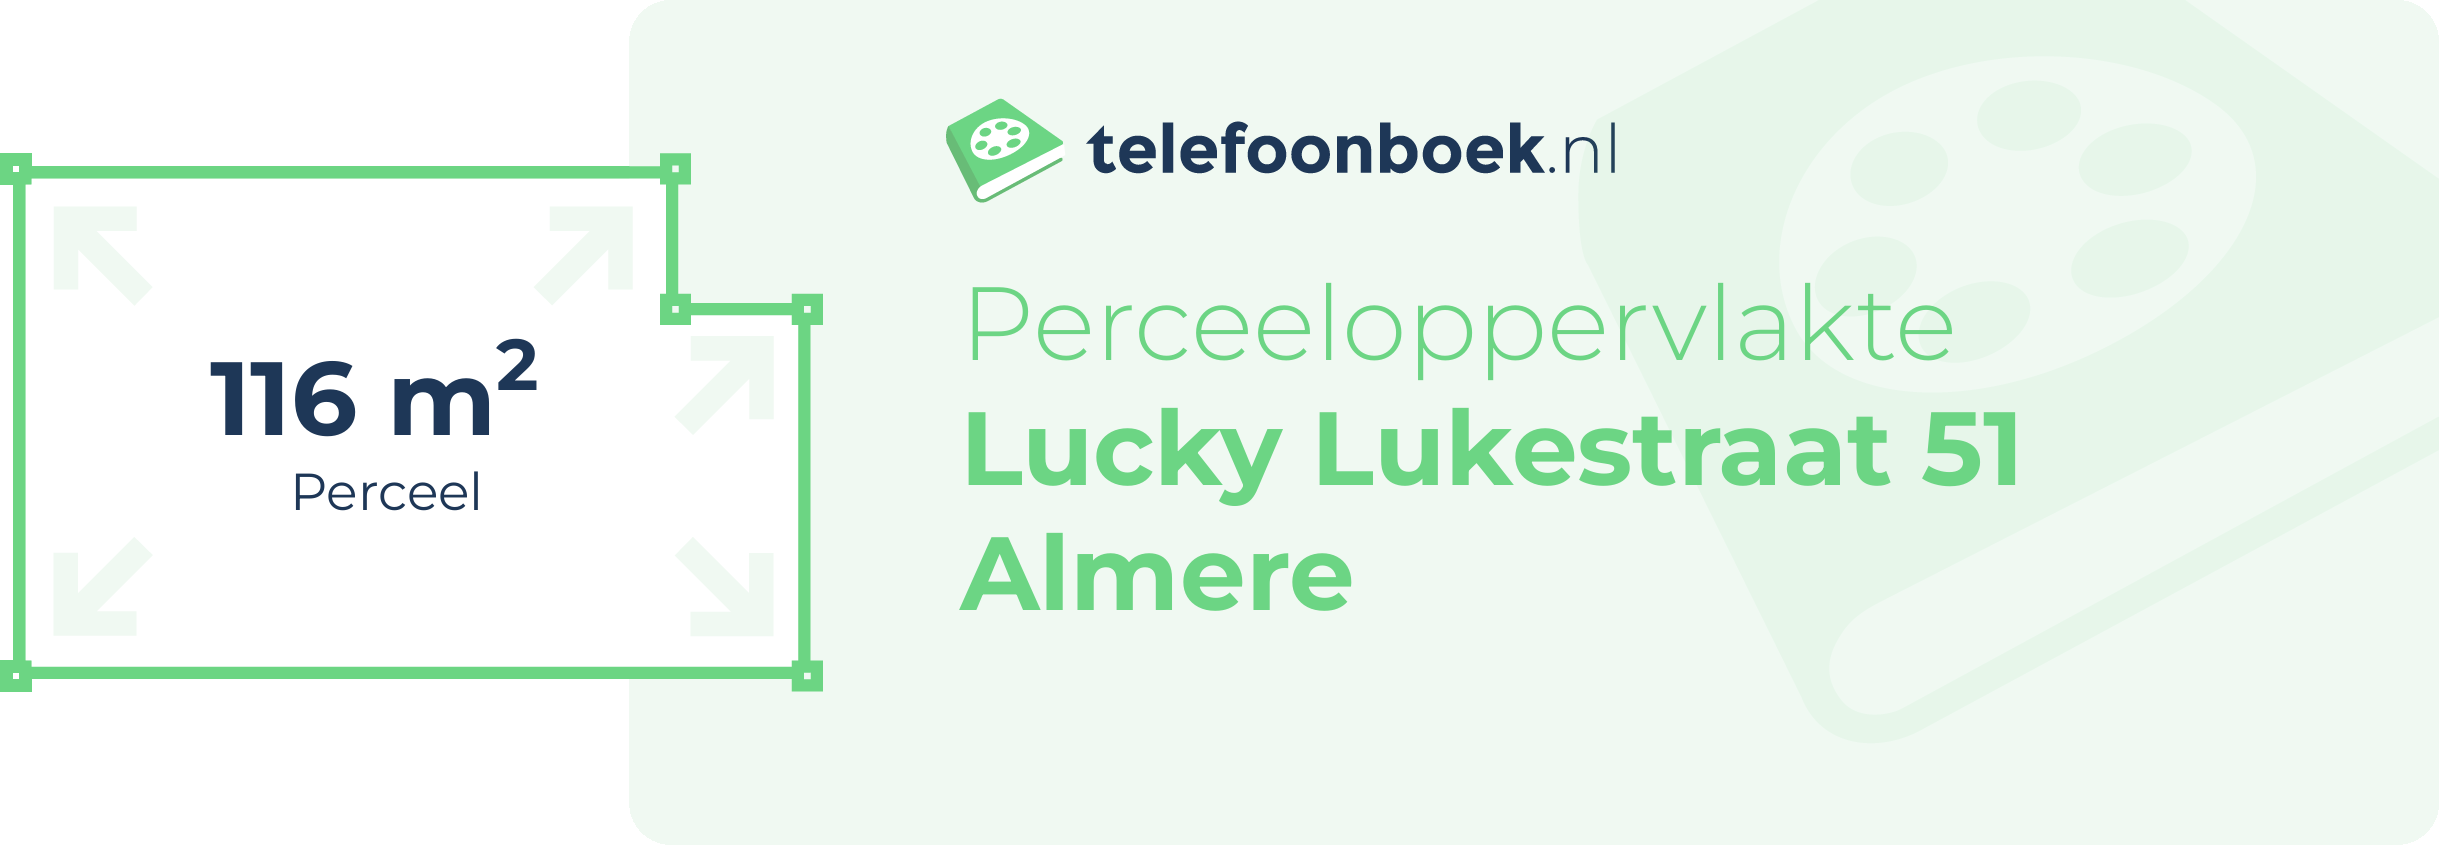 Perceeloppervlakte Lucky Lukestraat 51 Almere